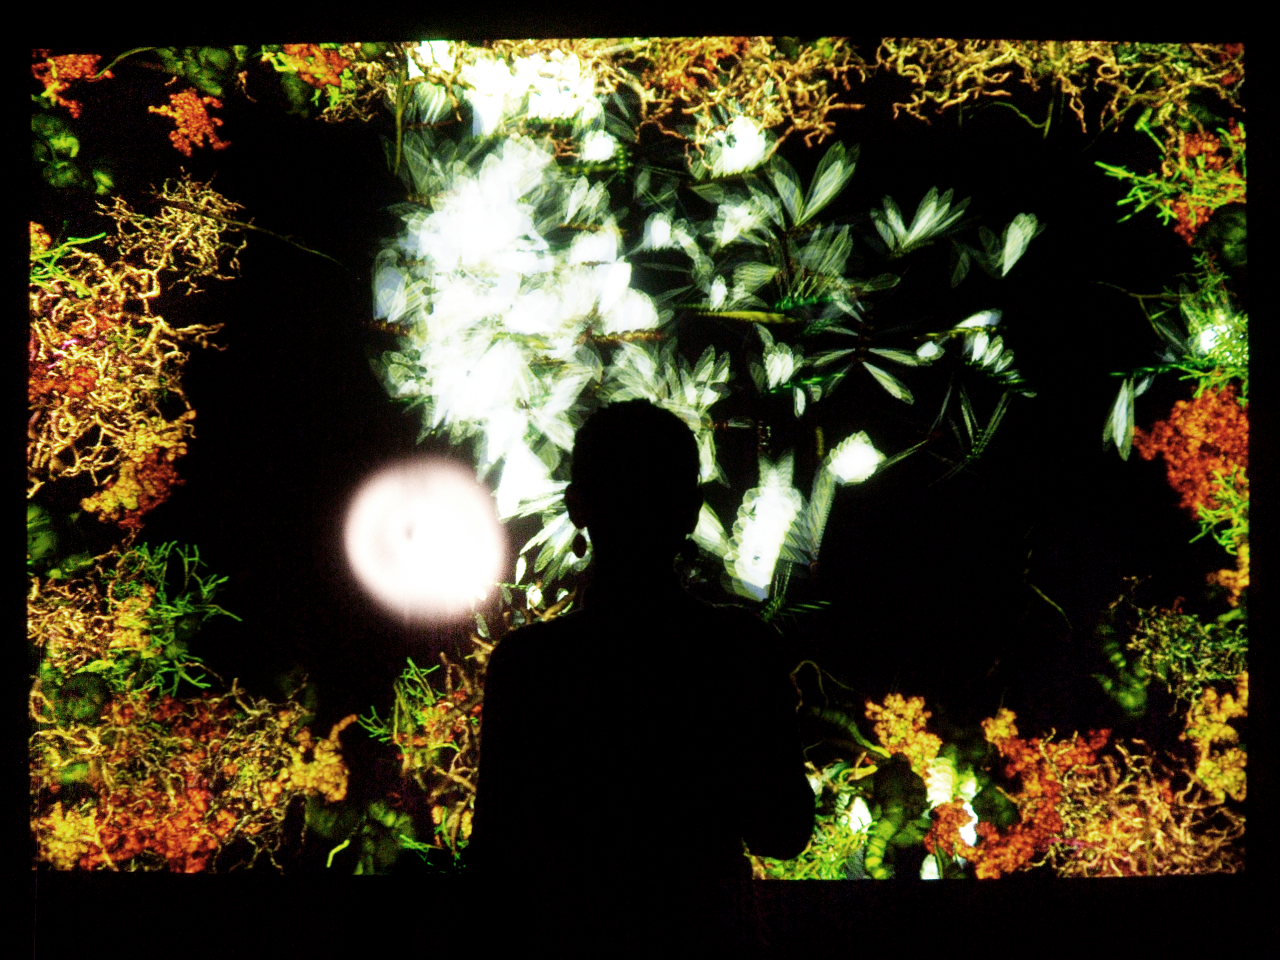 Die Silhouette einer Person vor einem Bildschirm leuchtender Pflanzen